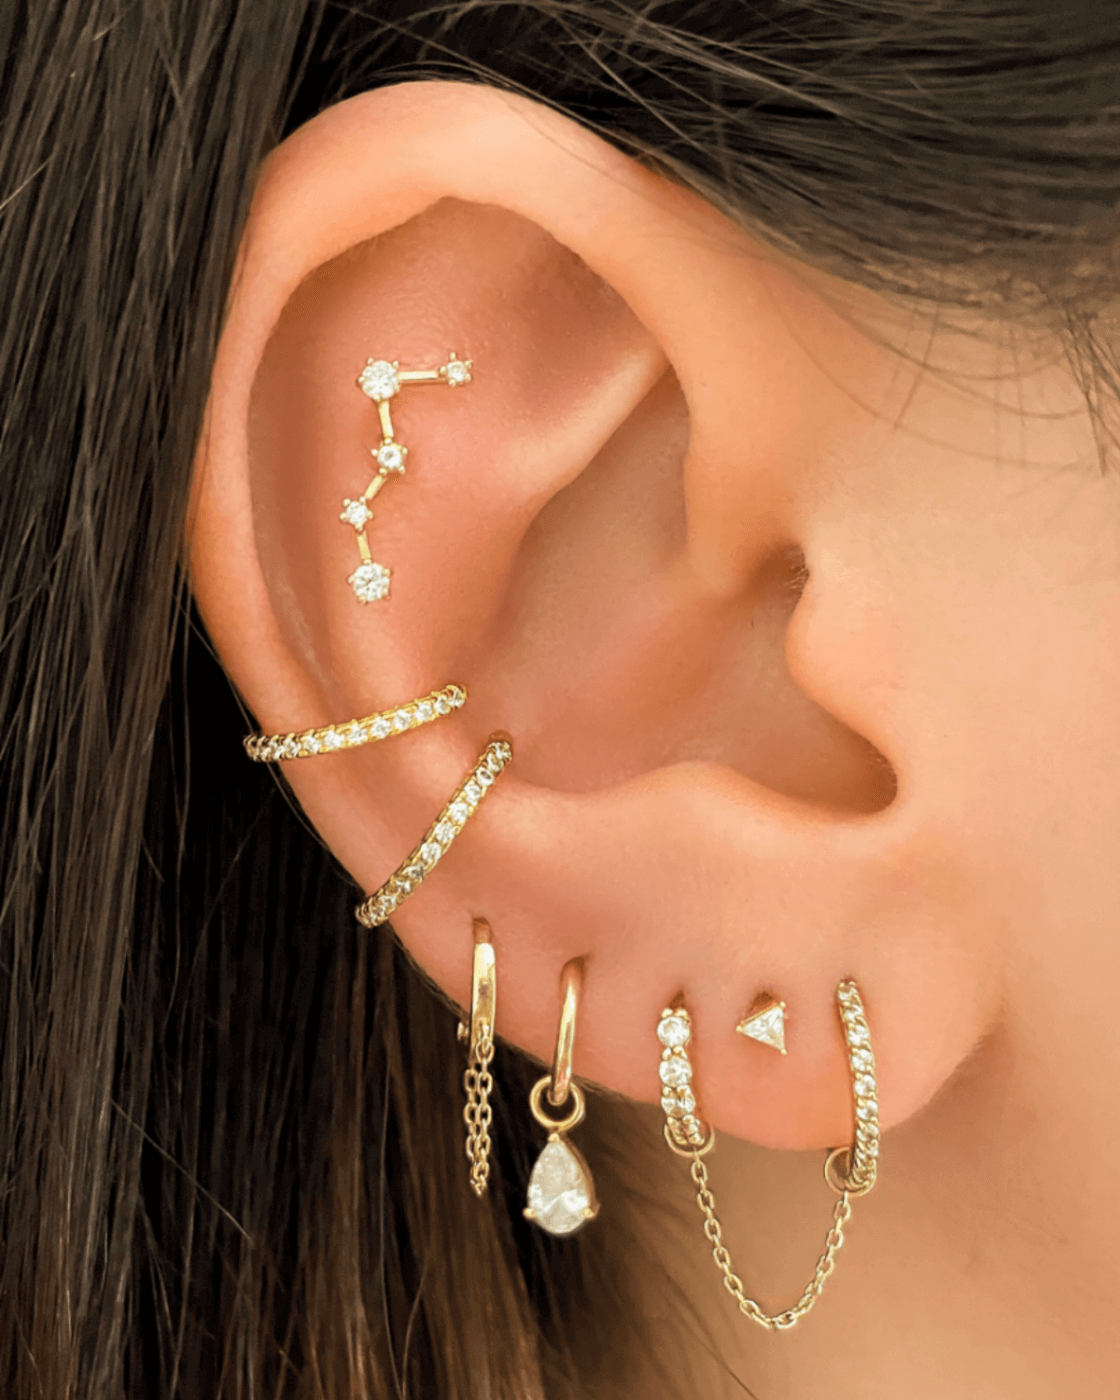 Double Piercing Earrings – Austin Down to Earth